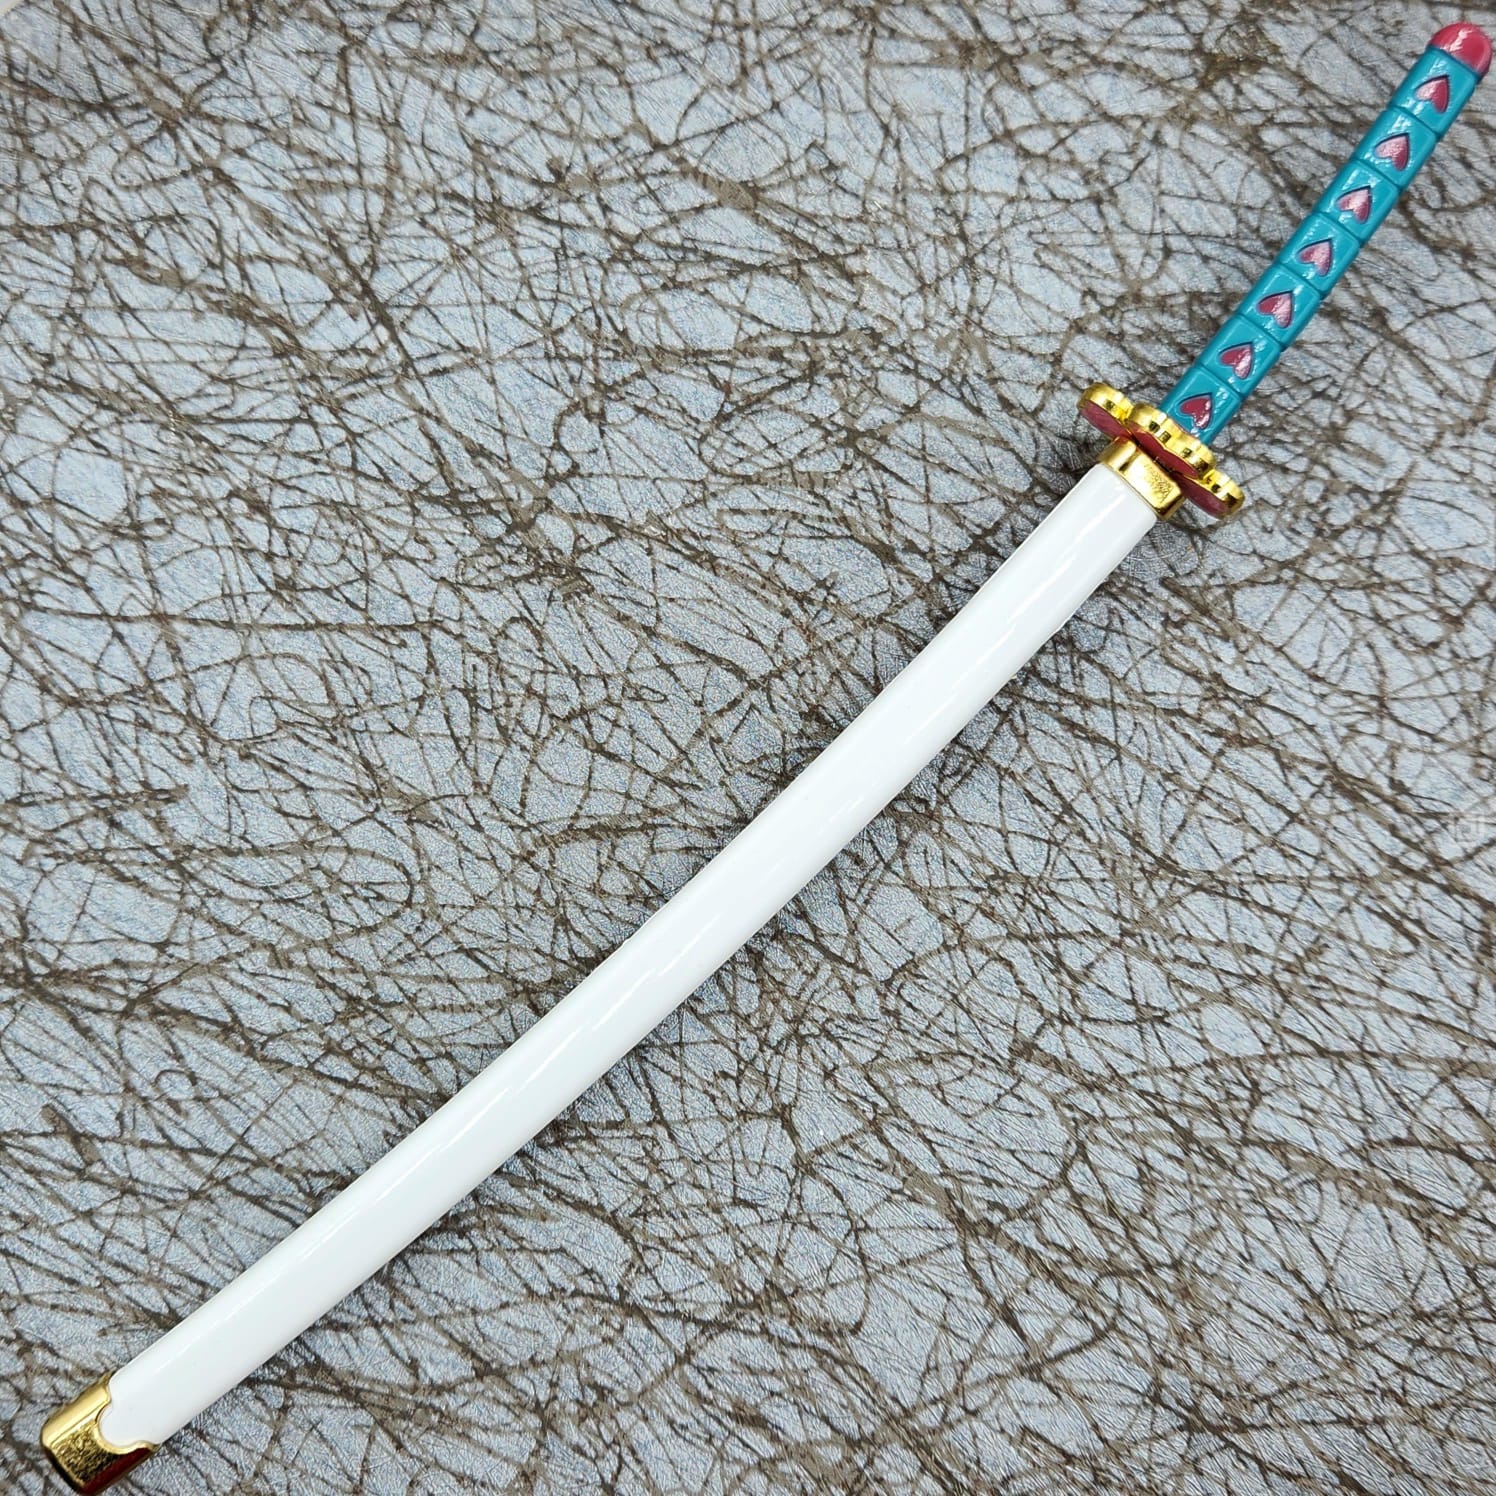 Mitsuri's Mini Katana (25 cm)